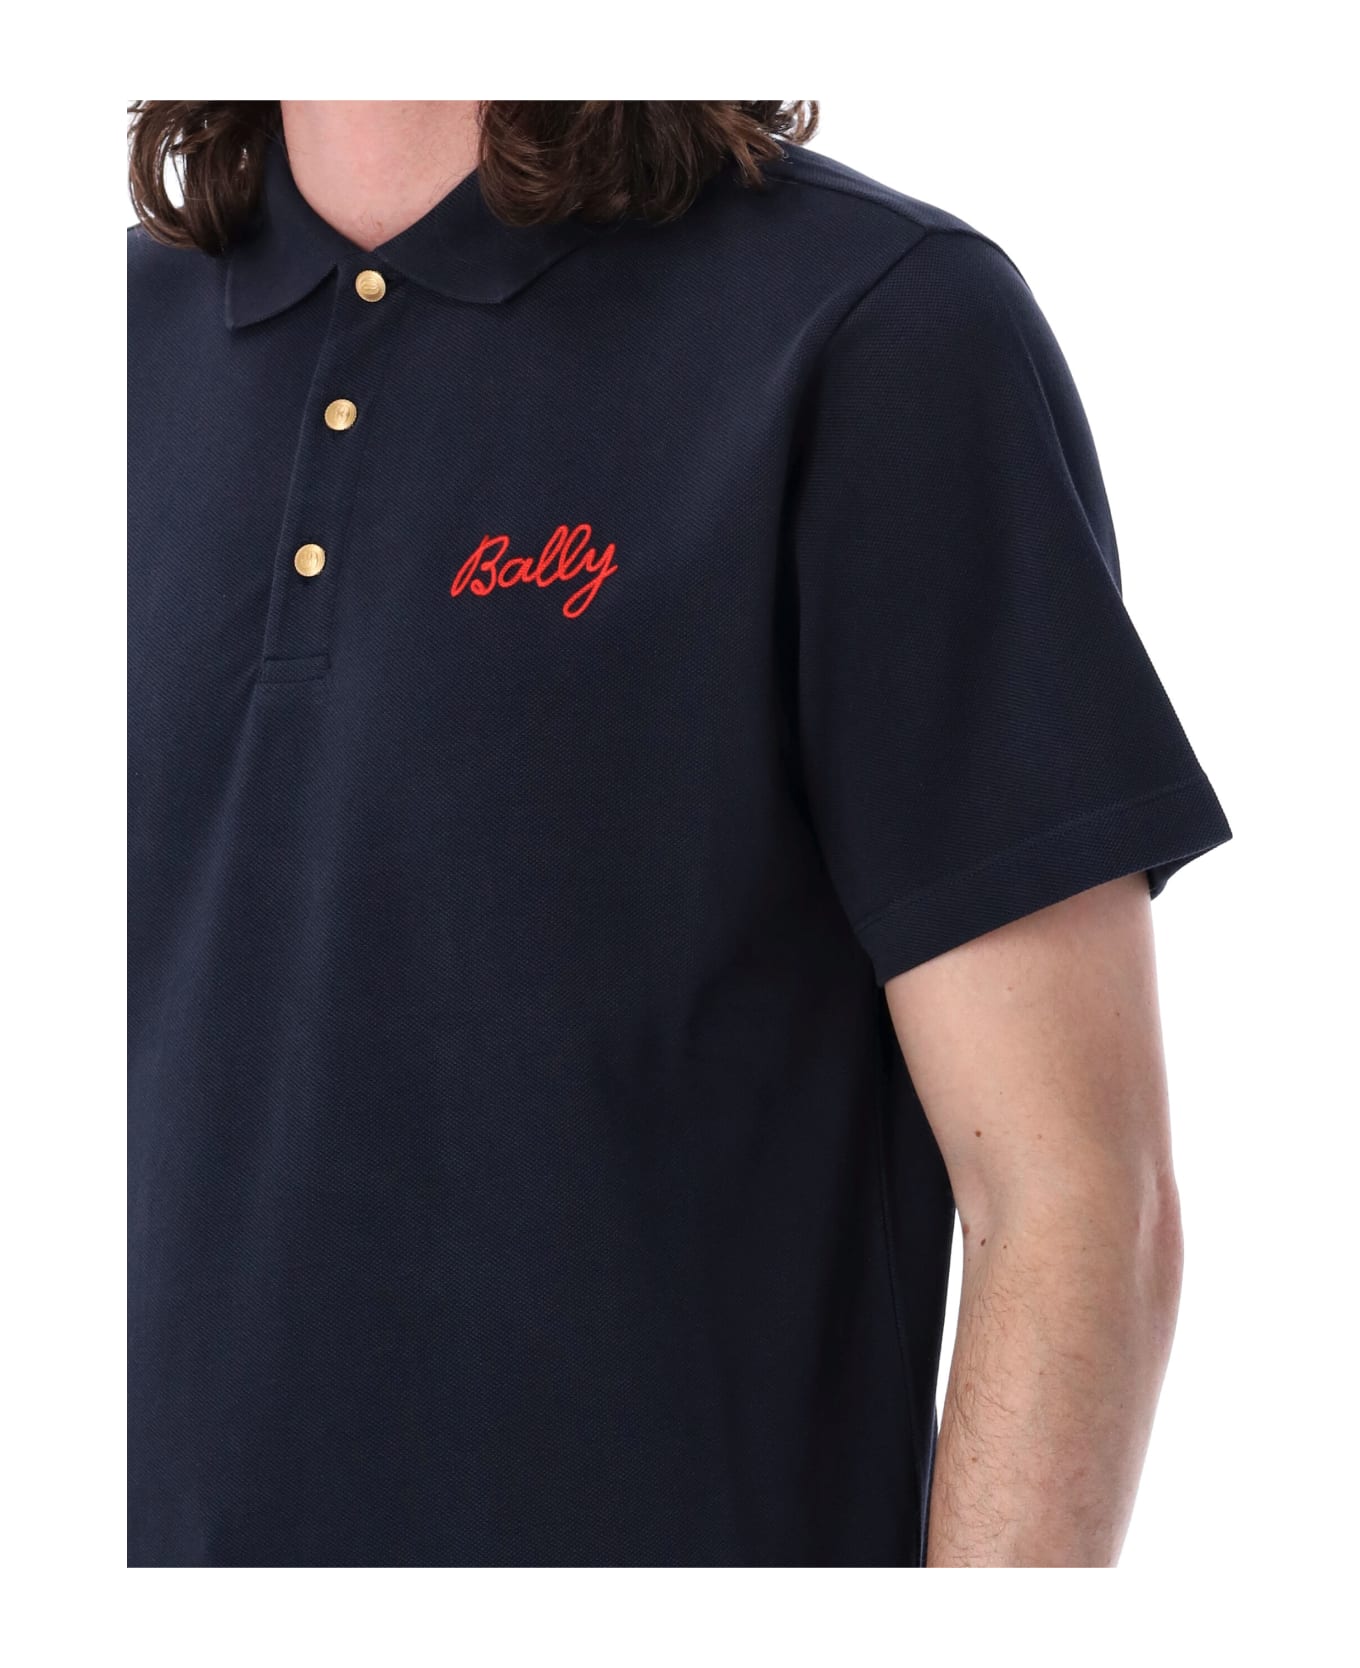 Bally Polo Shirt - NAVY